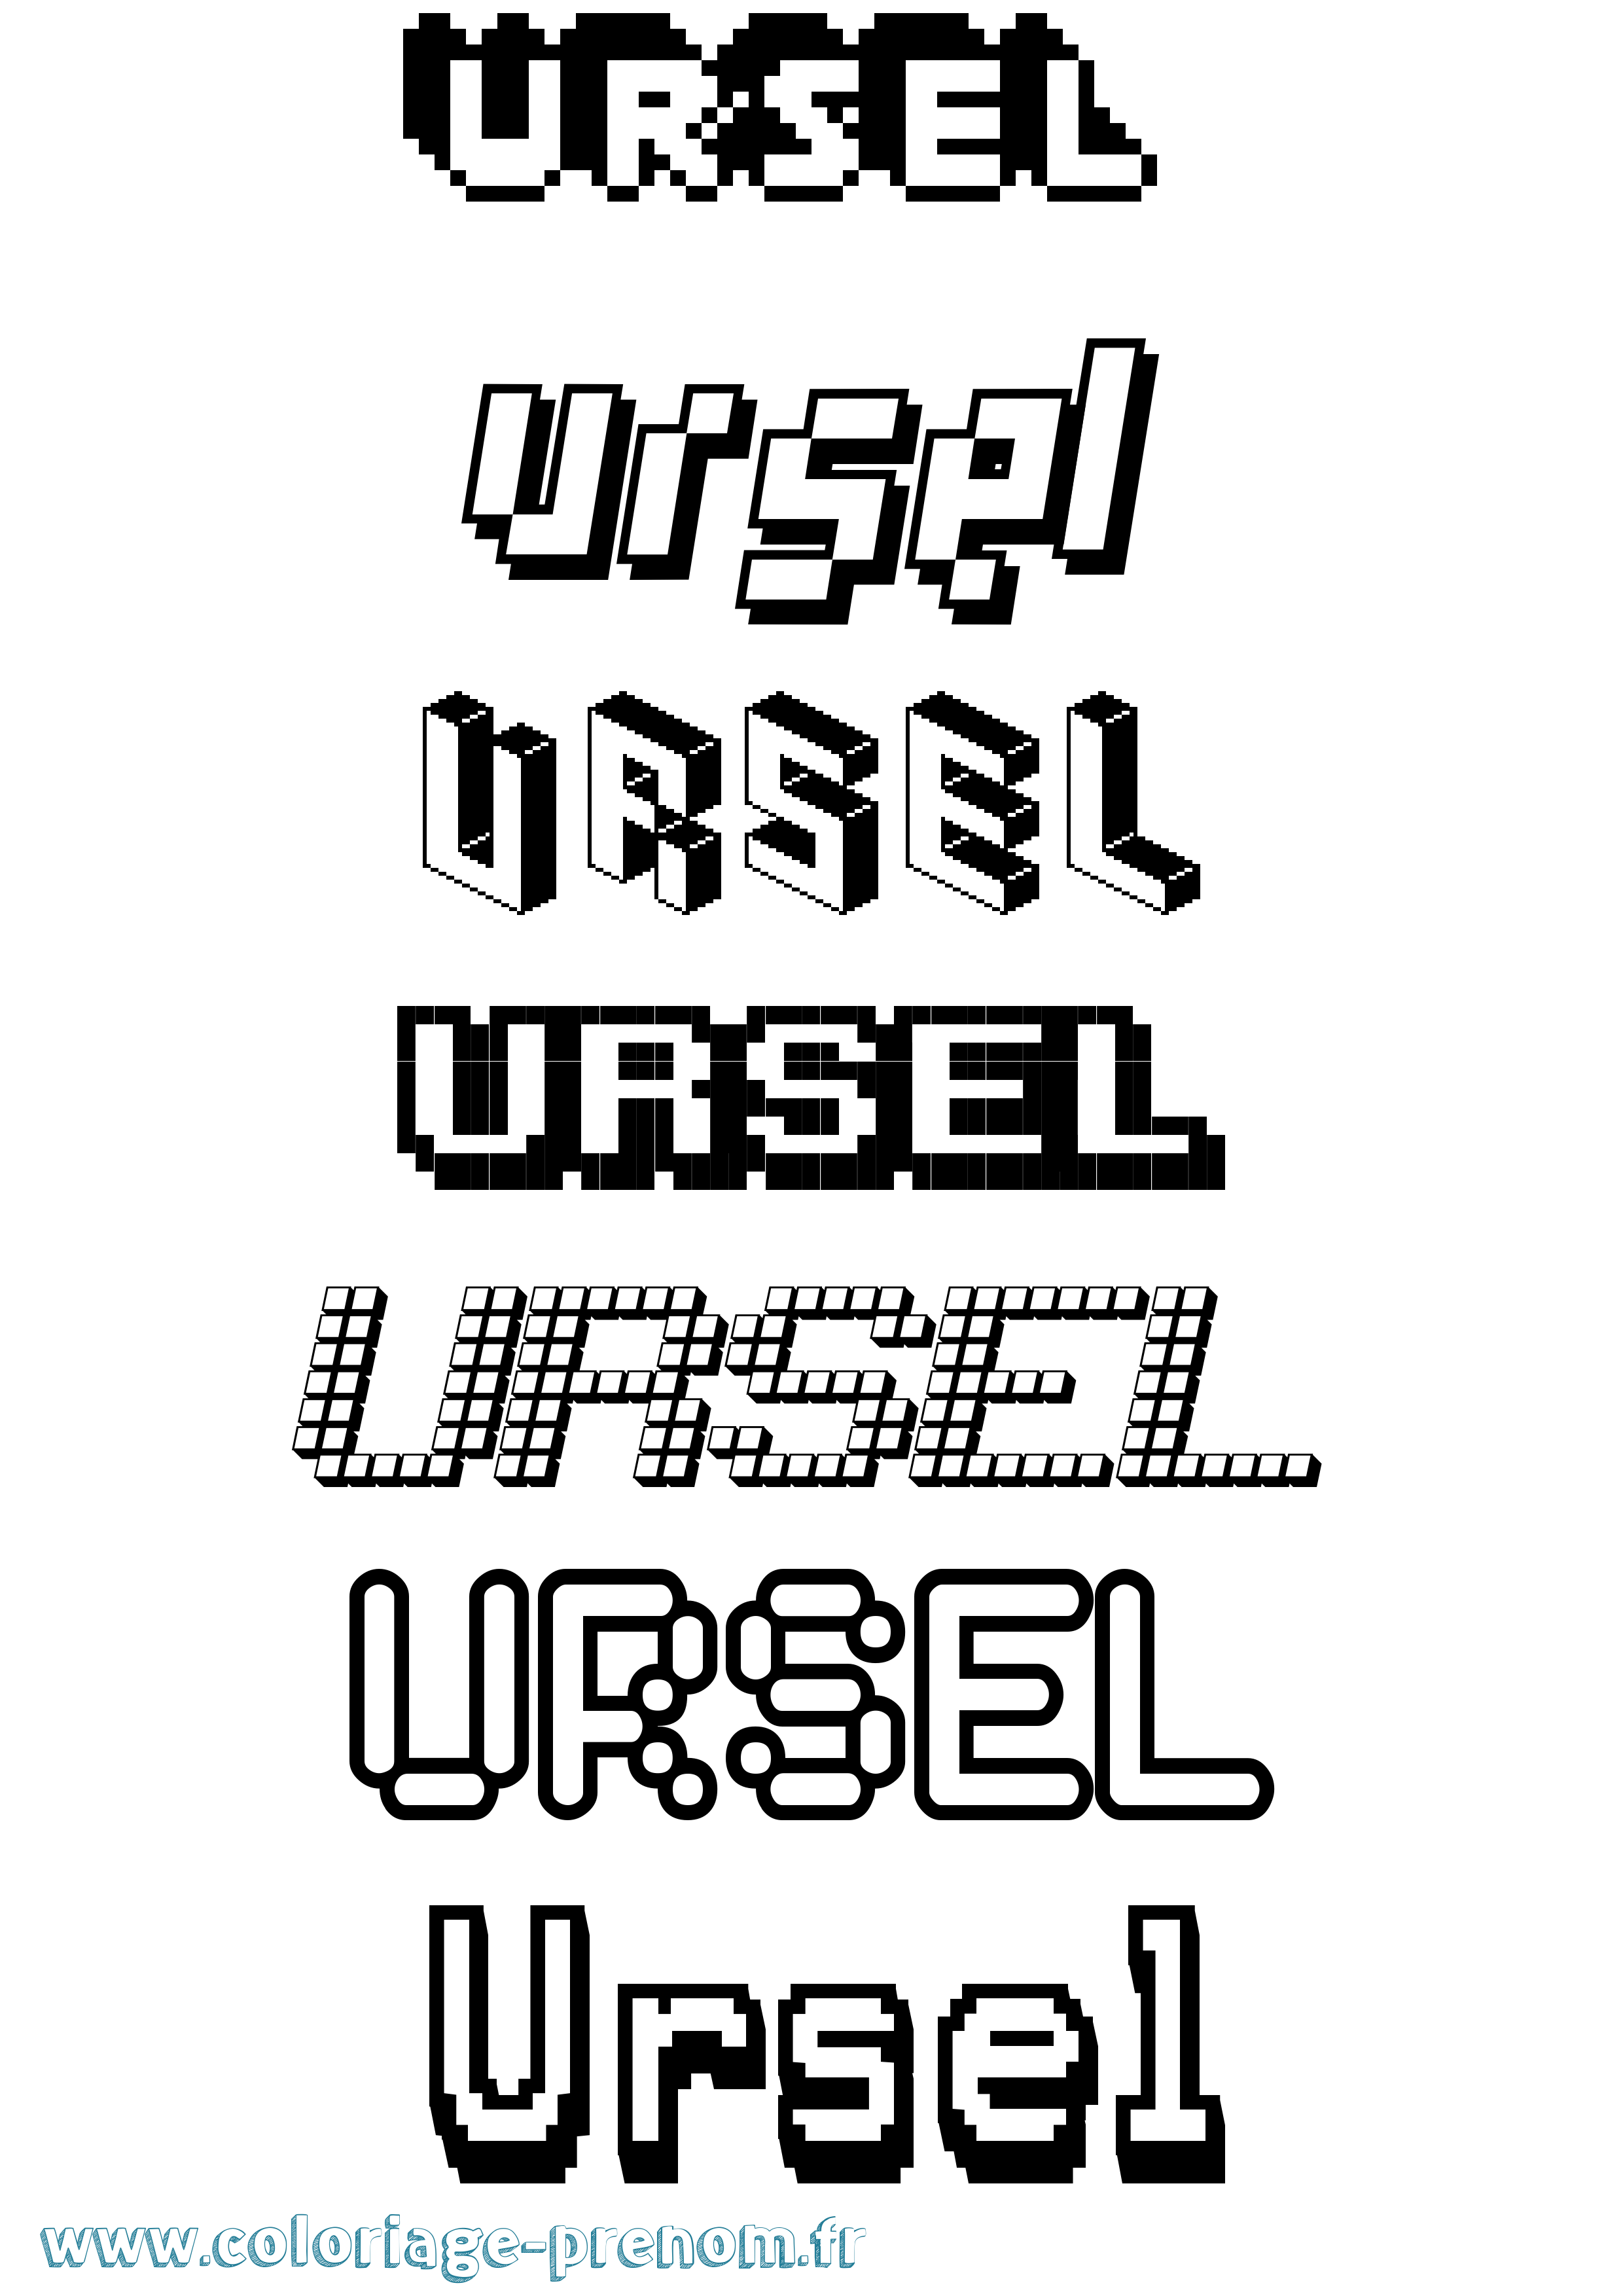 Coloriage prénom Ursel Pixel